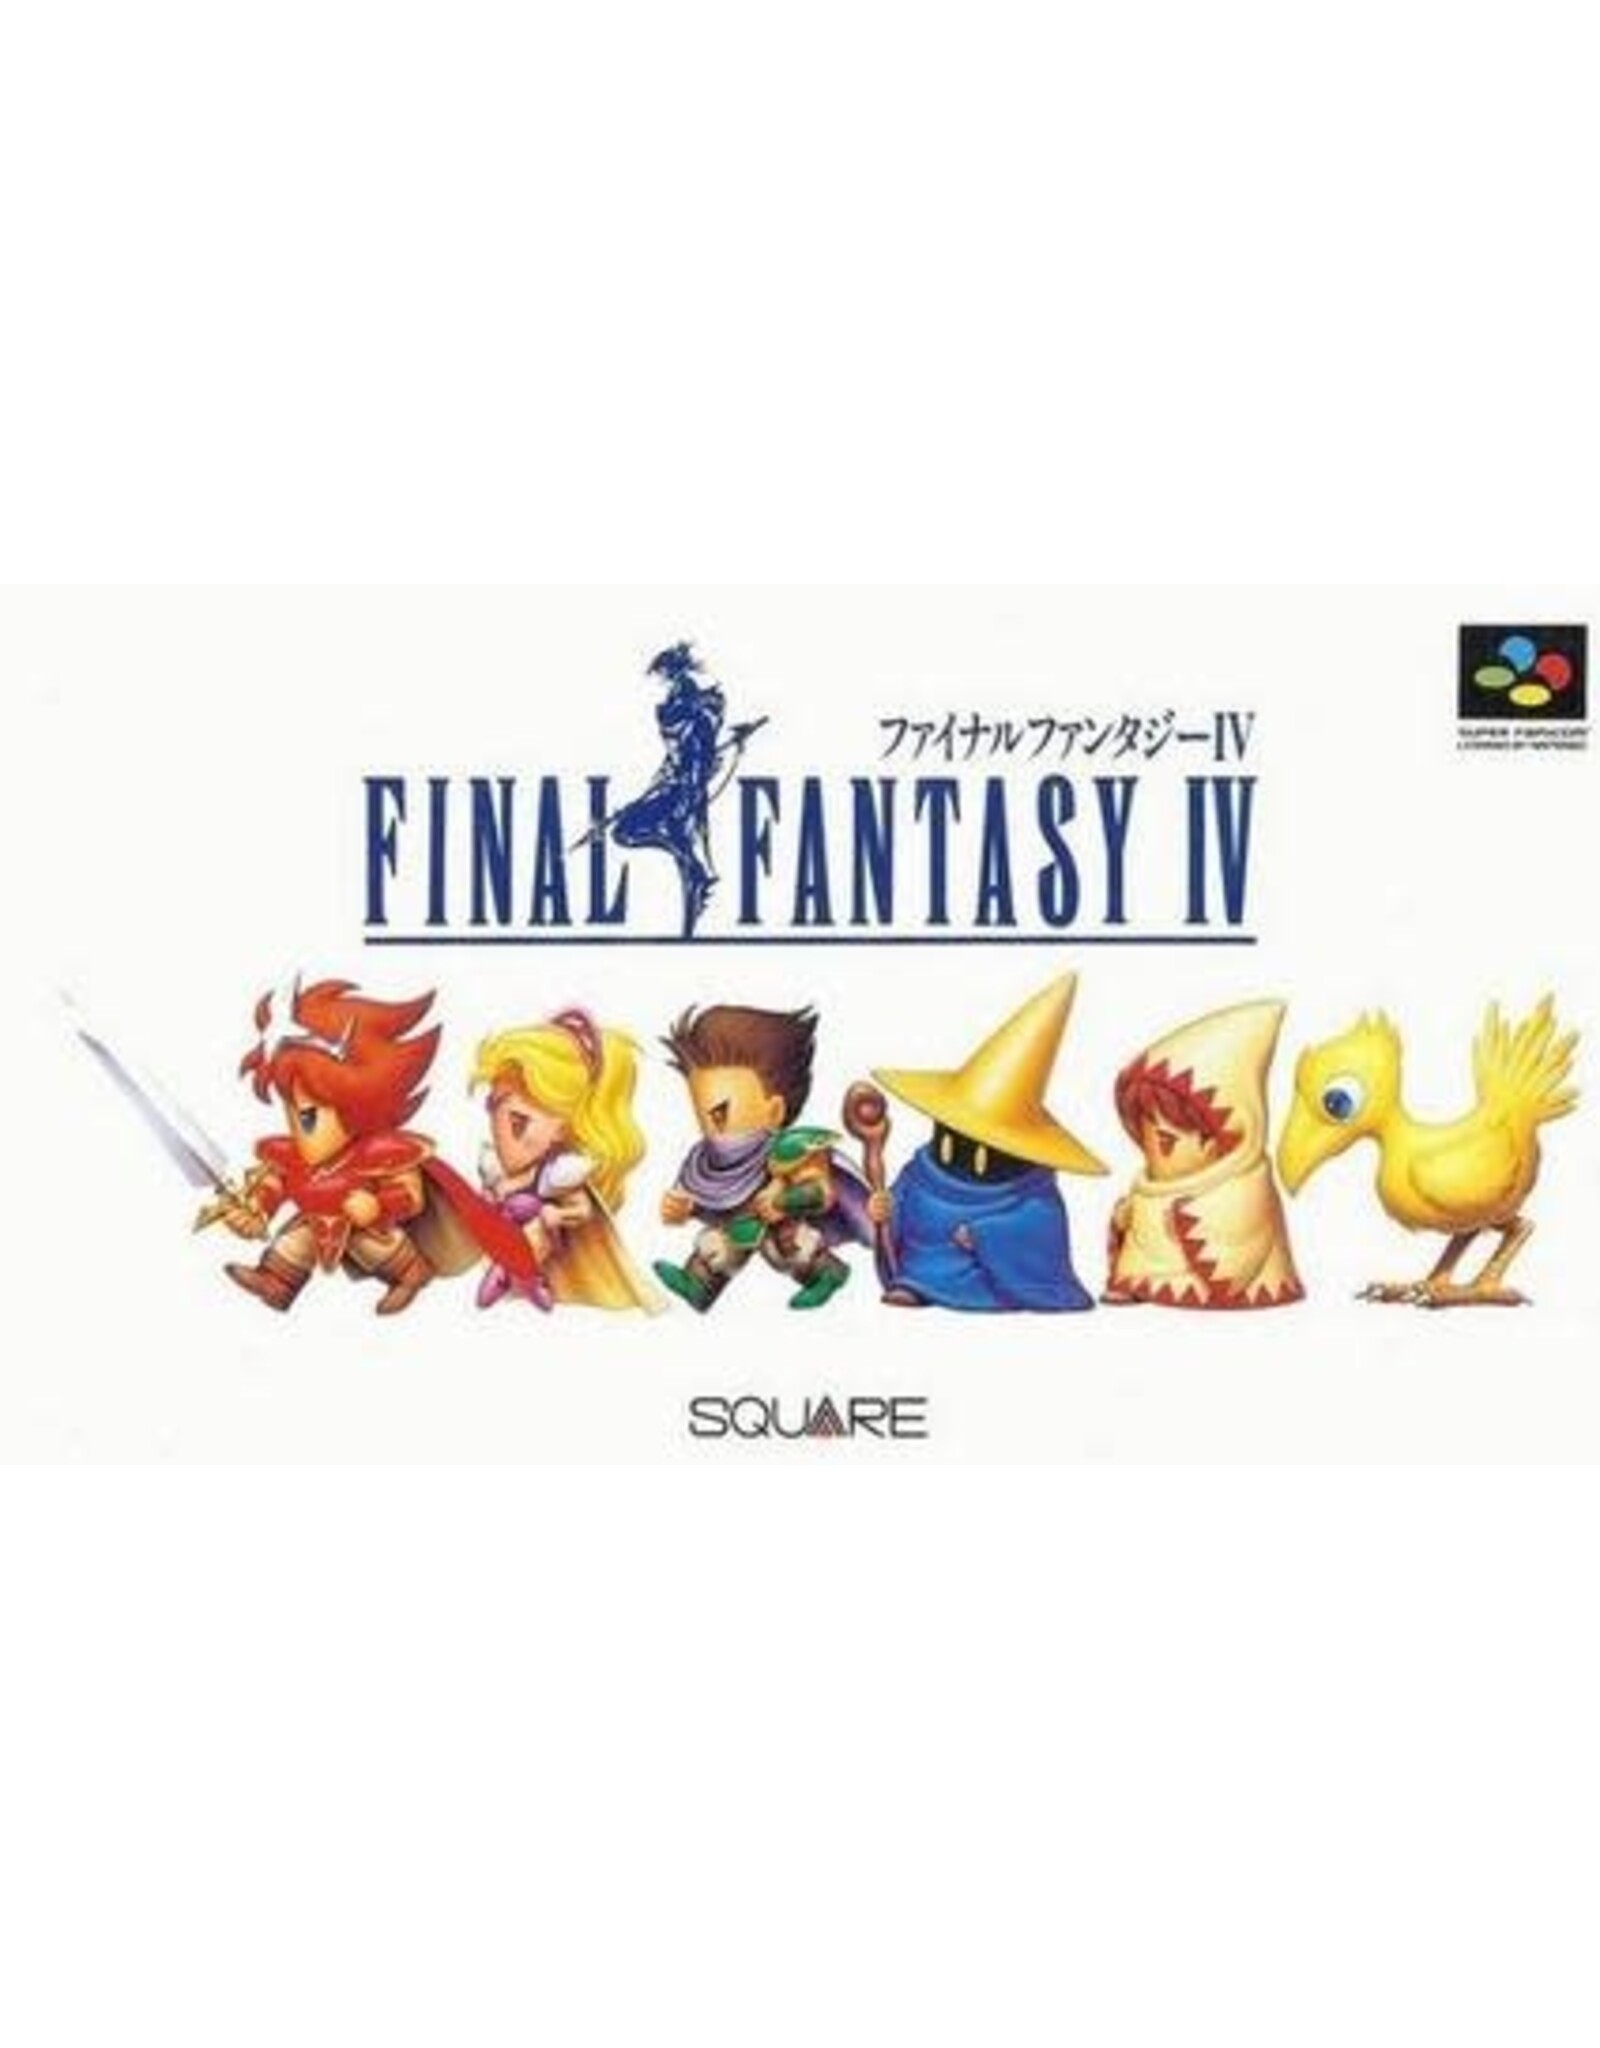 Super Famicom Final Fantasy IV (Cart Only, JP Import)